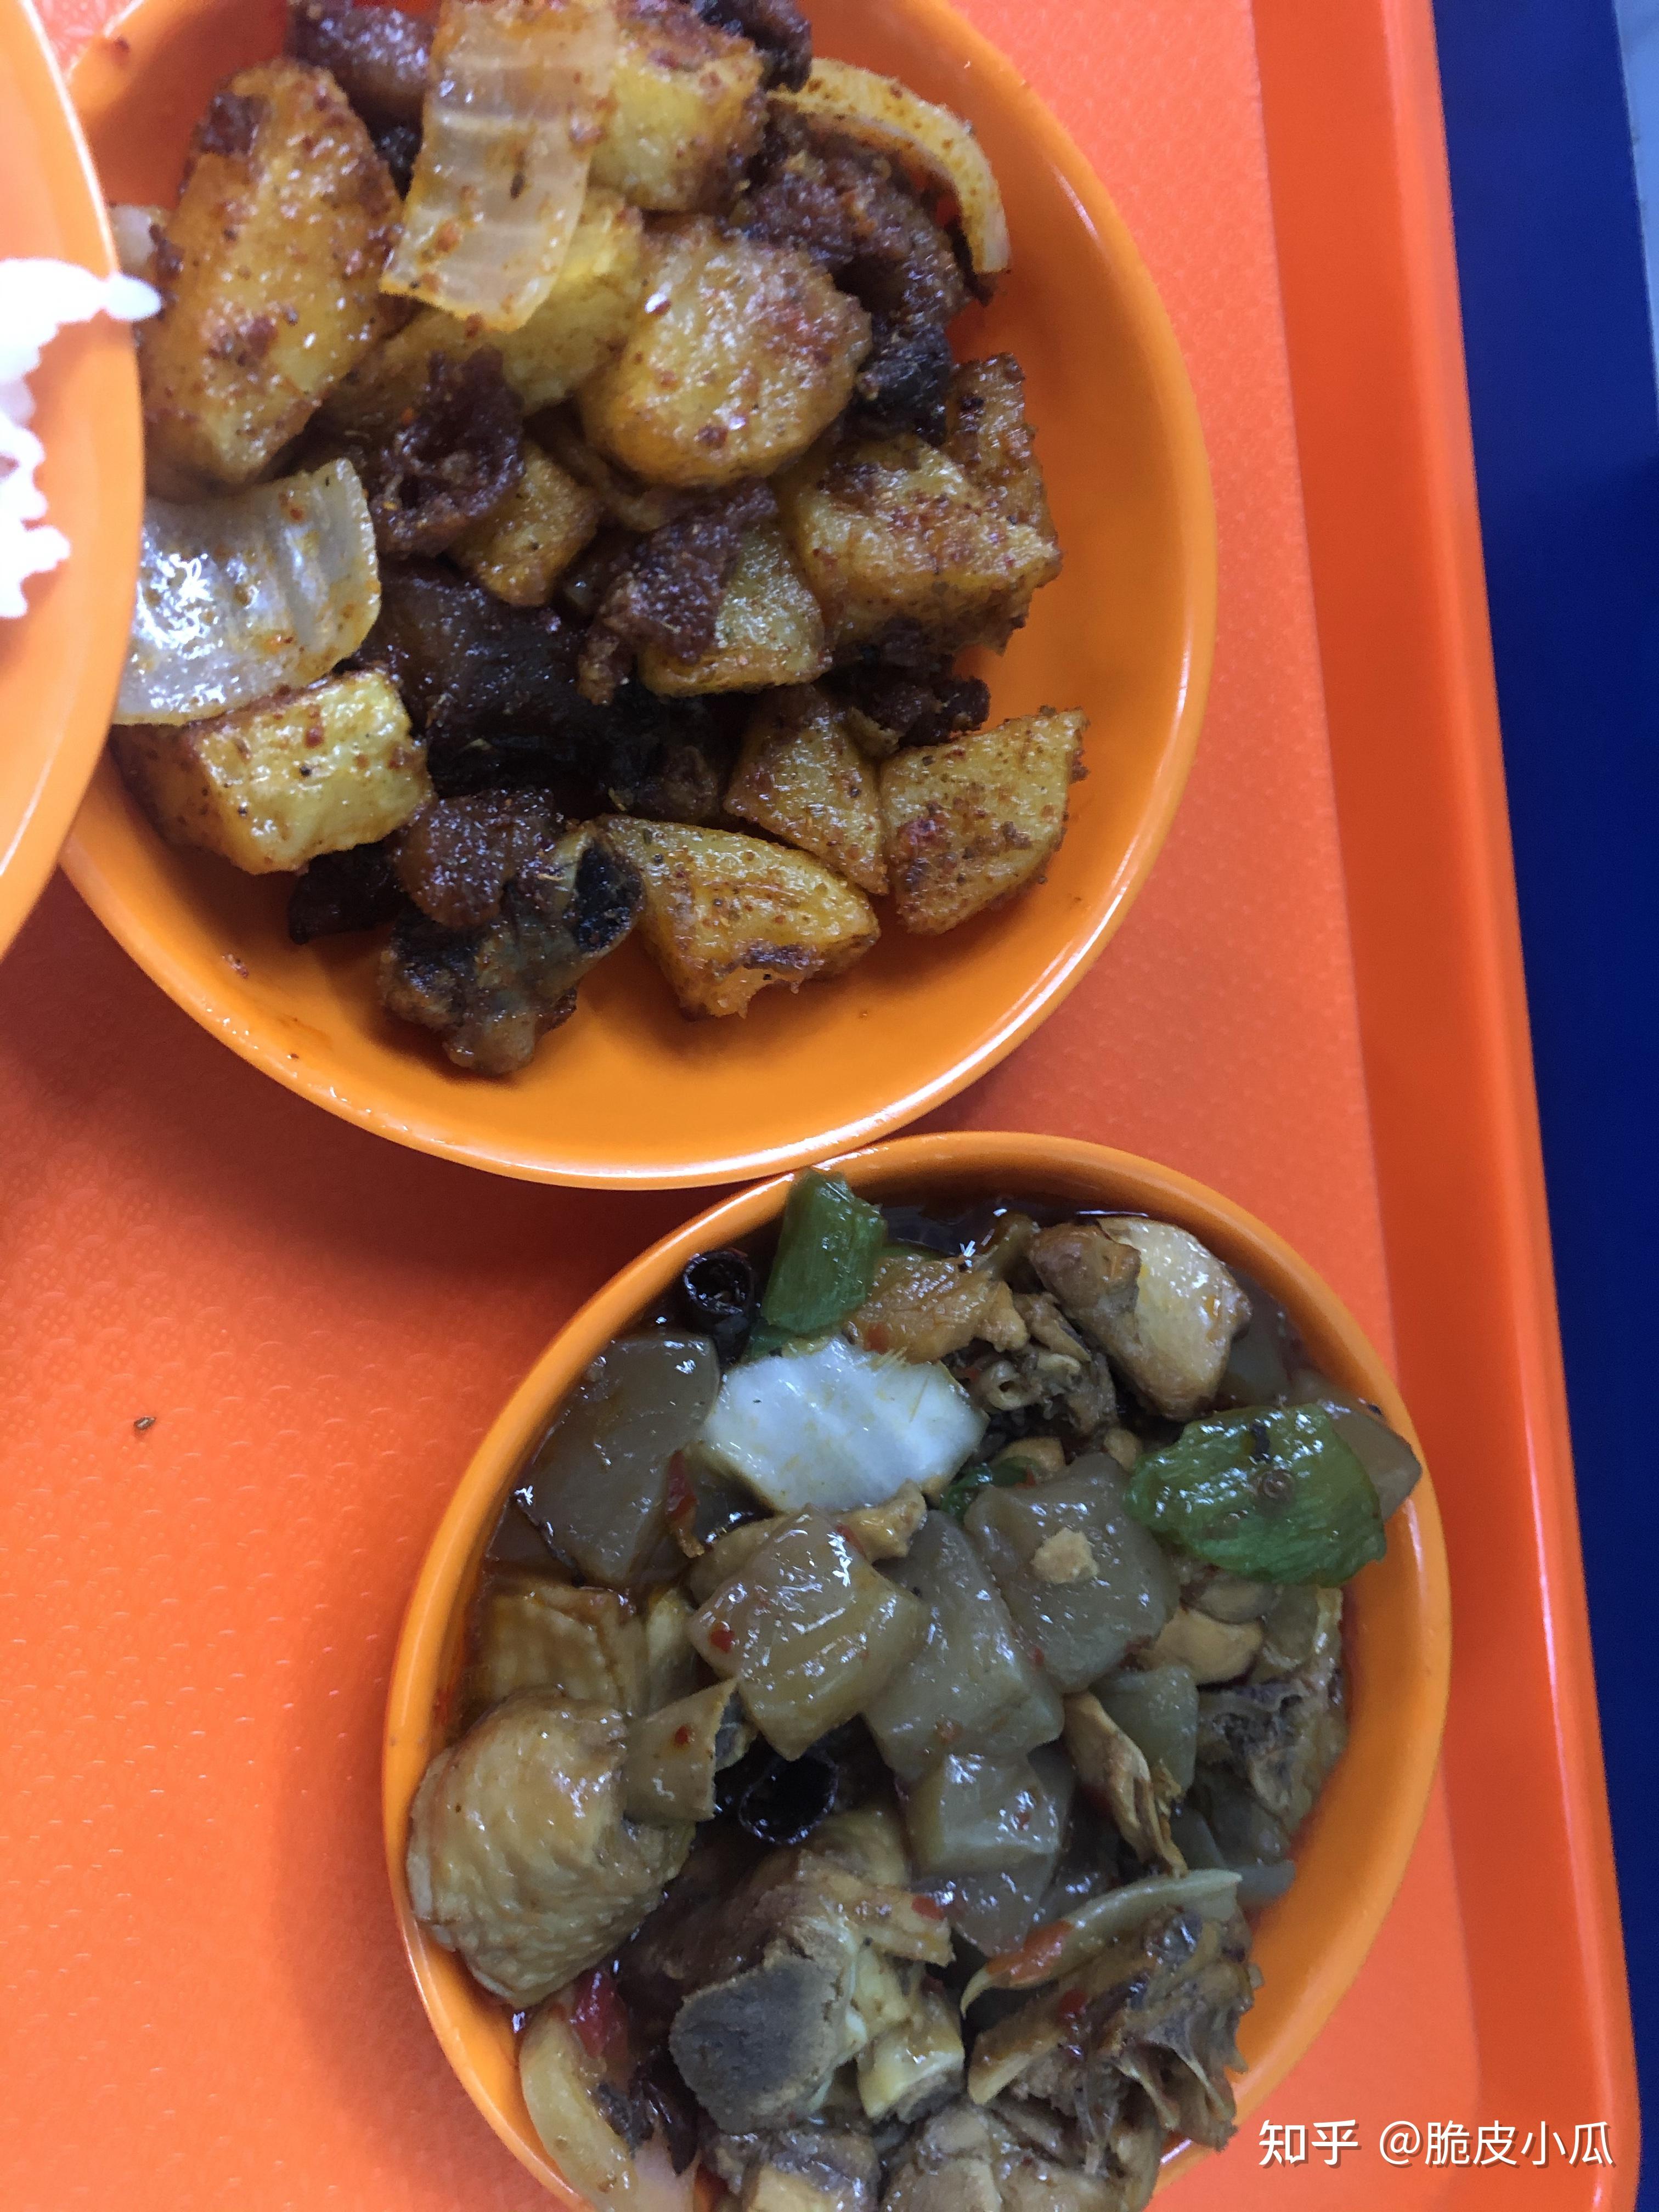 在新疆大学里就餐是一种怎样的体验?有什么推荐的食堂和美食?